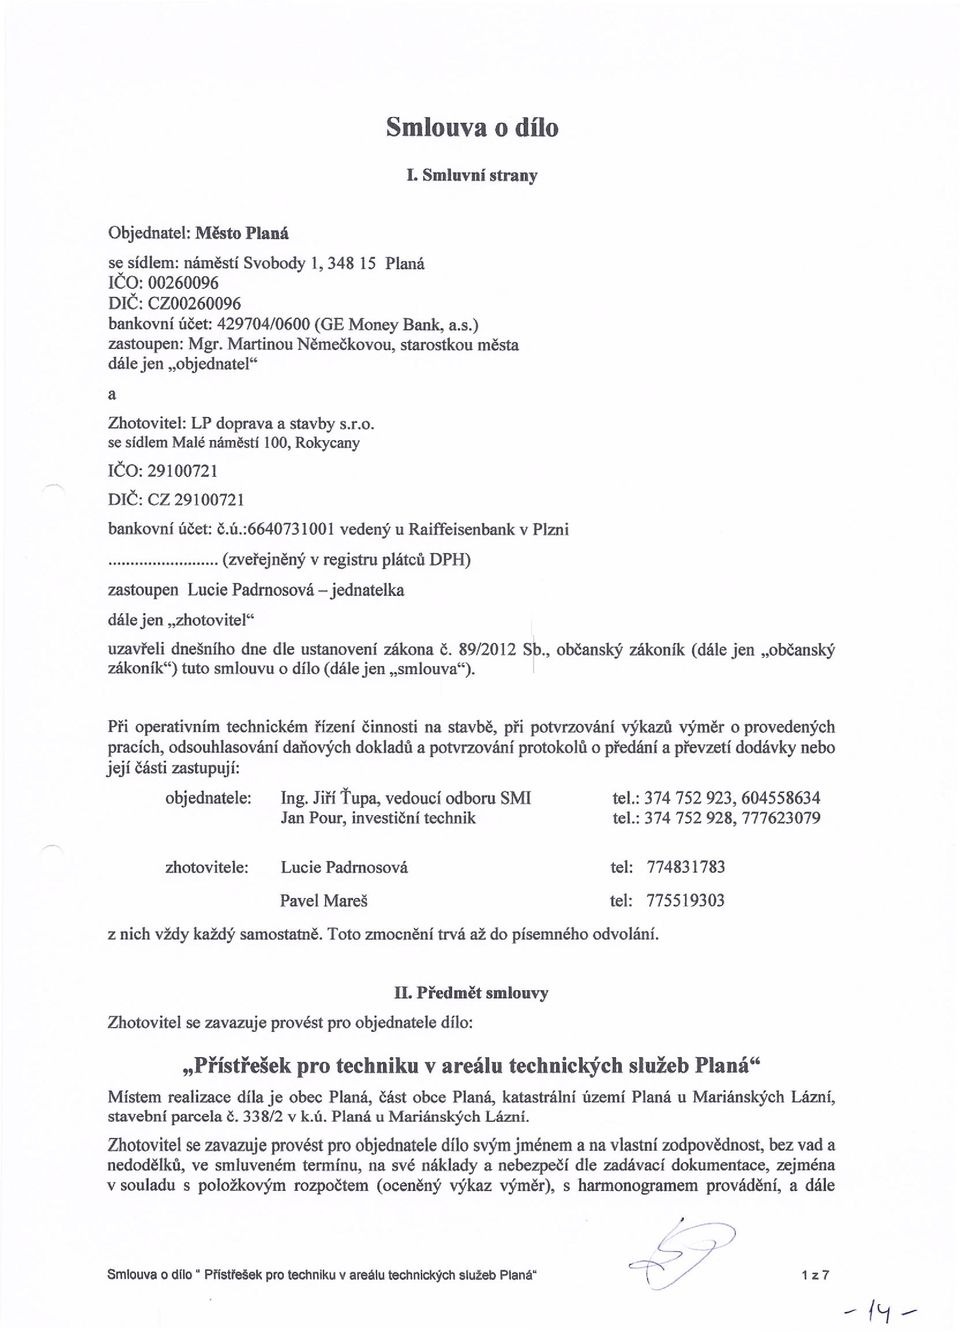 et: č.ú.:6640731001 vedený u Raiffeisenbank v Plzni... (zveřejněný v registru plátců DPH) zastoupen Lucie Padmosová - jednatelka dále jen "zhotovíte I" uzavřeli dnešního dne dle ustanovení zákona Č.